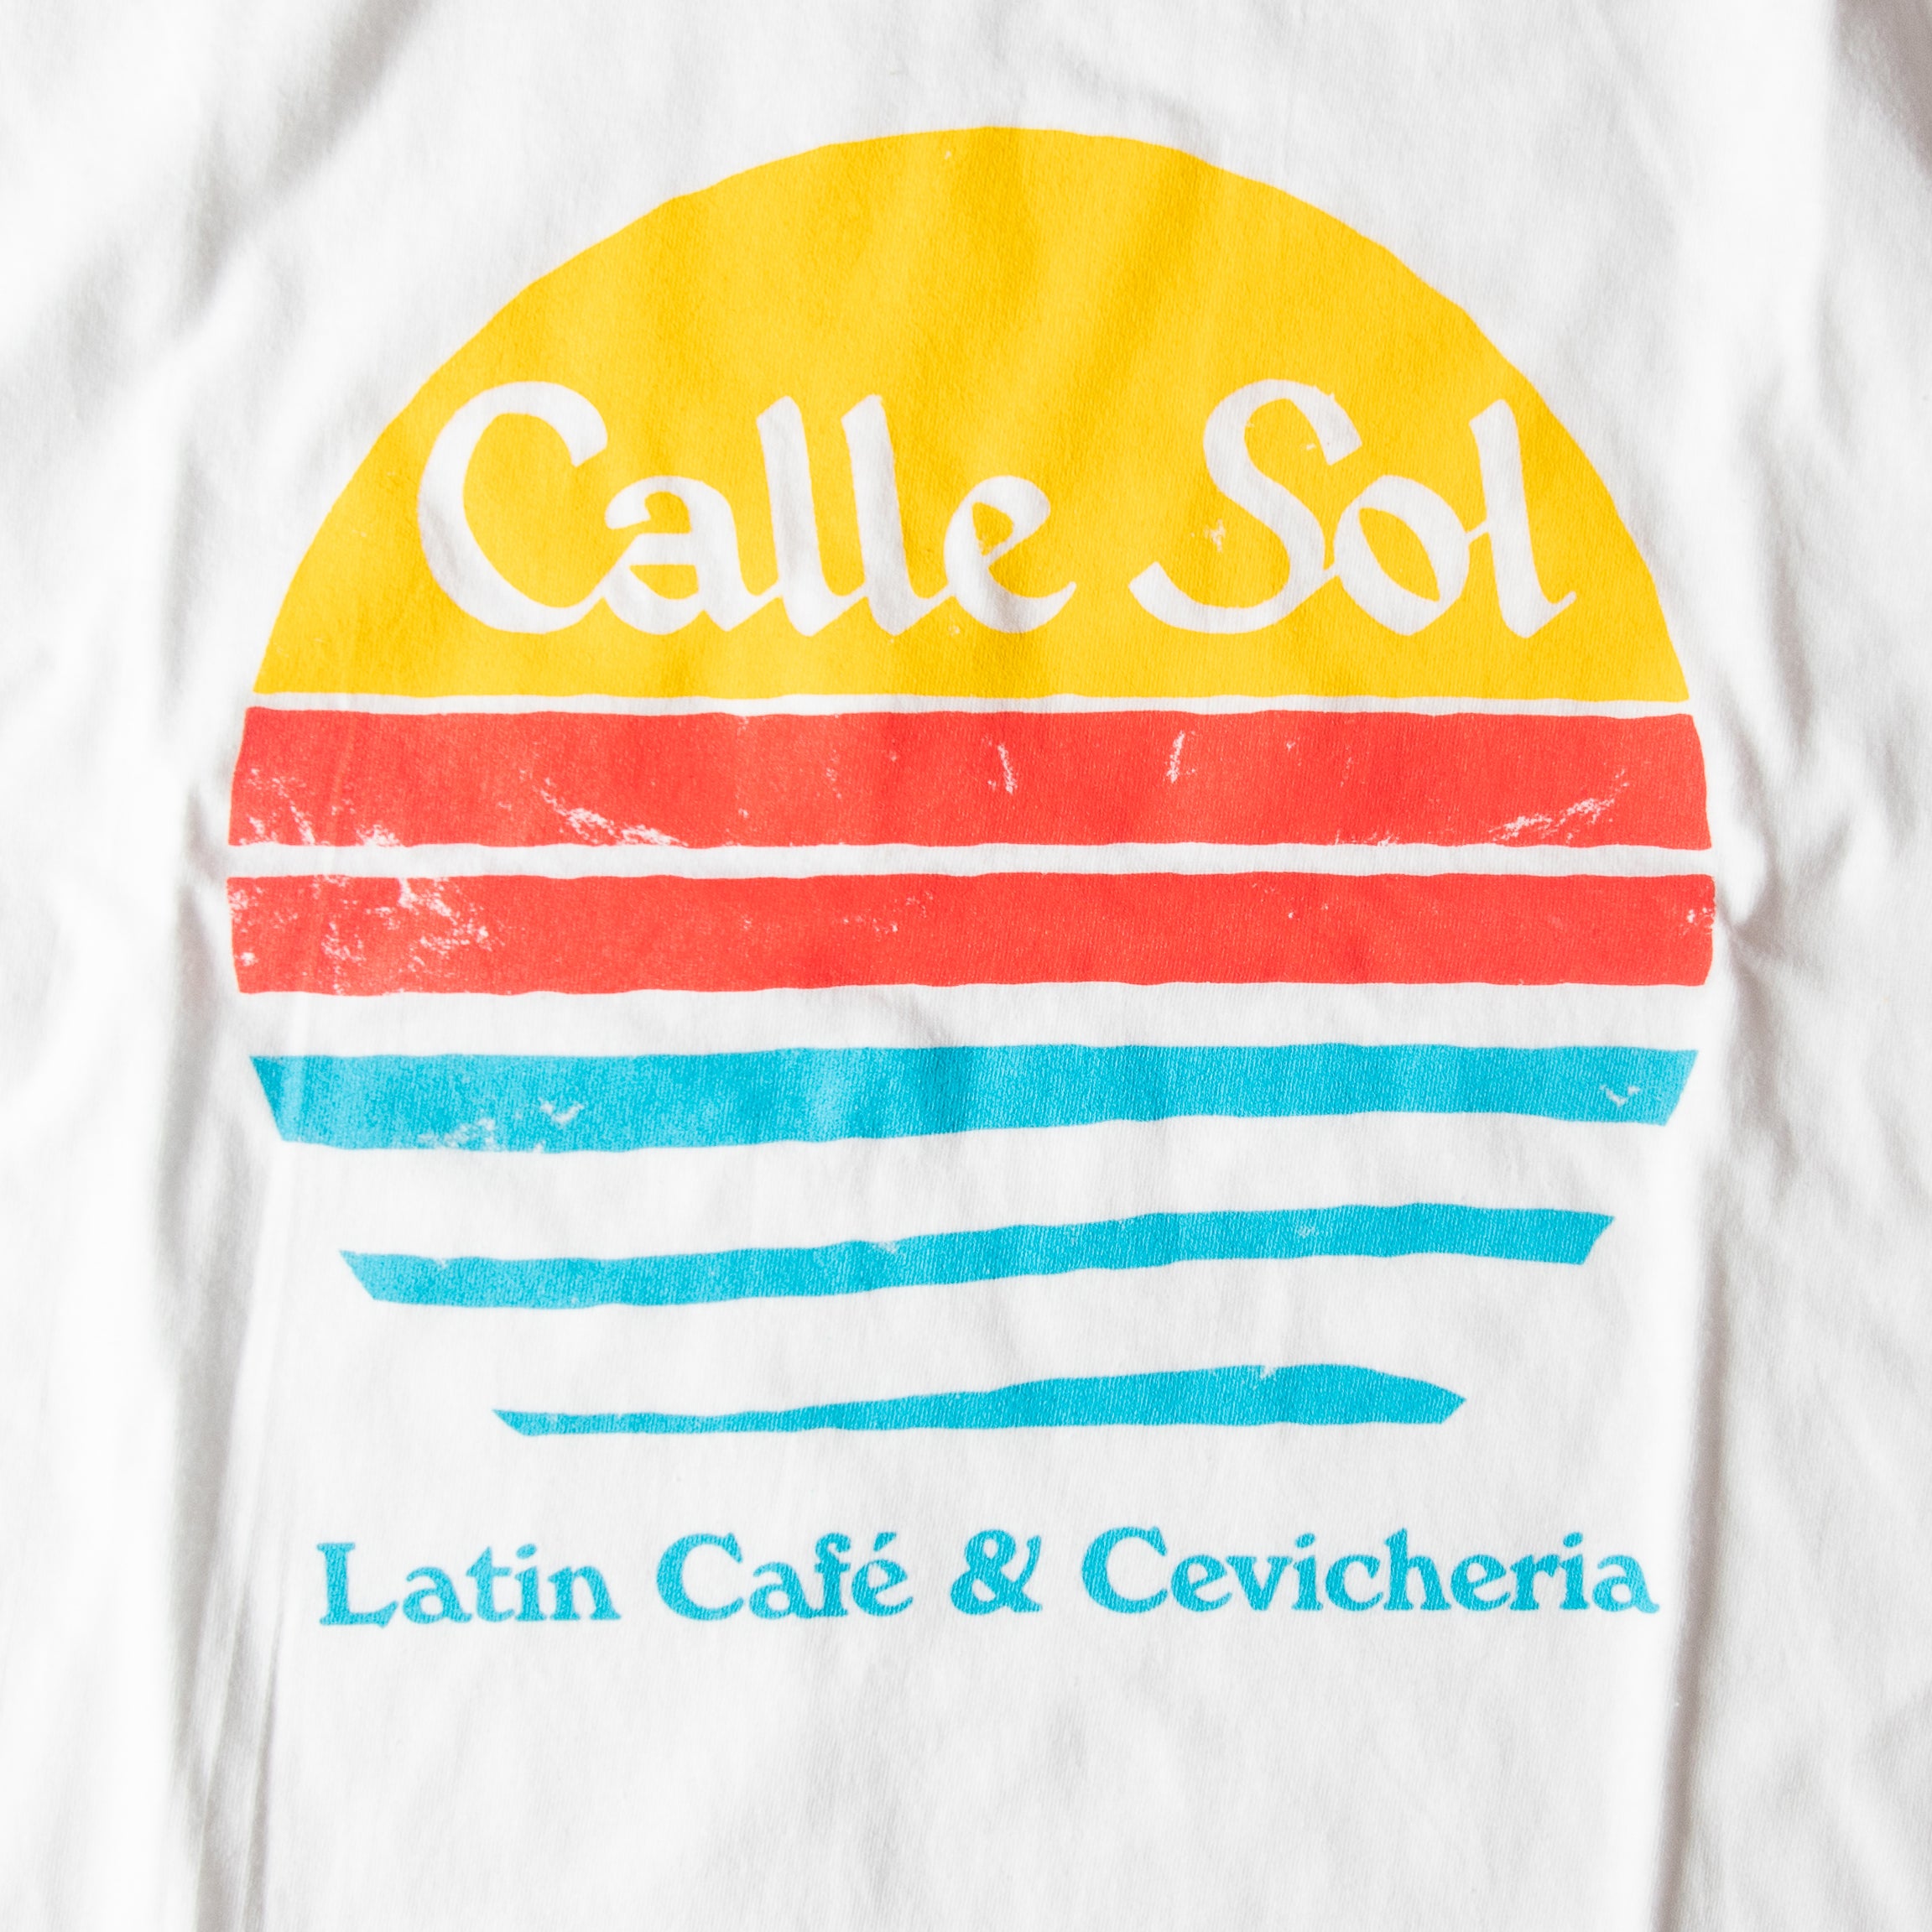 Calle Sol Beach shirt